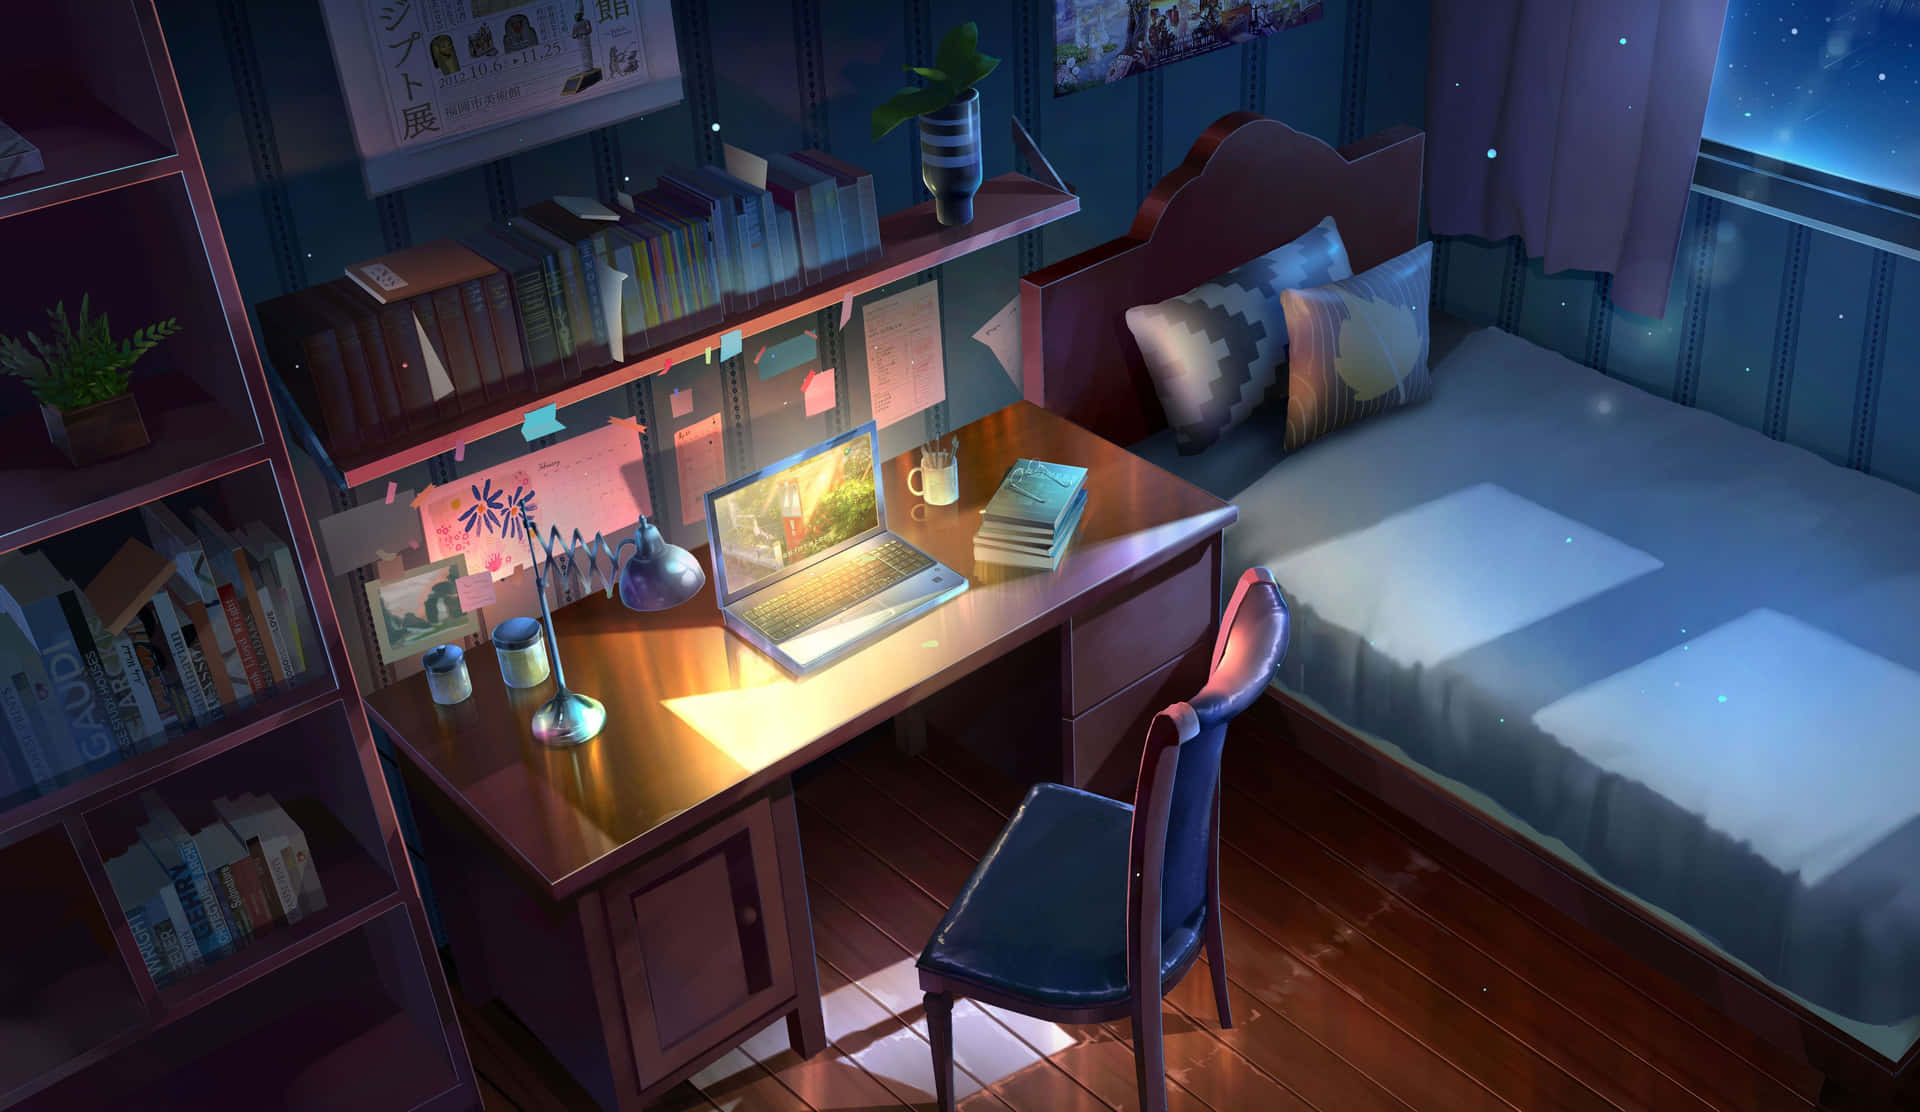 Et soveværelse med et skrivebord og en lampe. Wallpaper